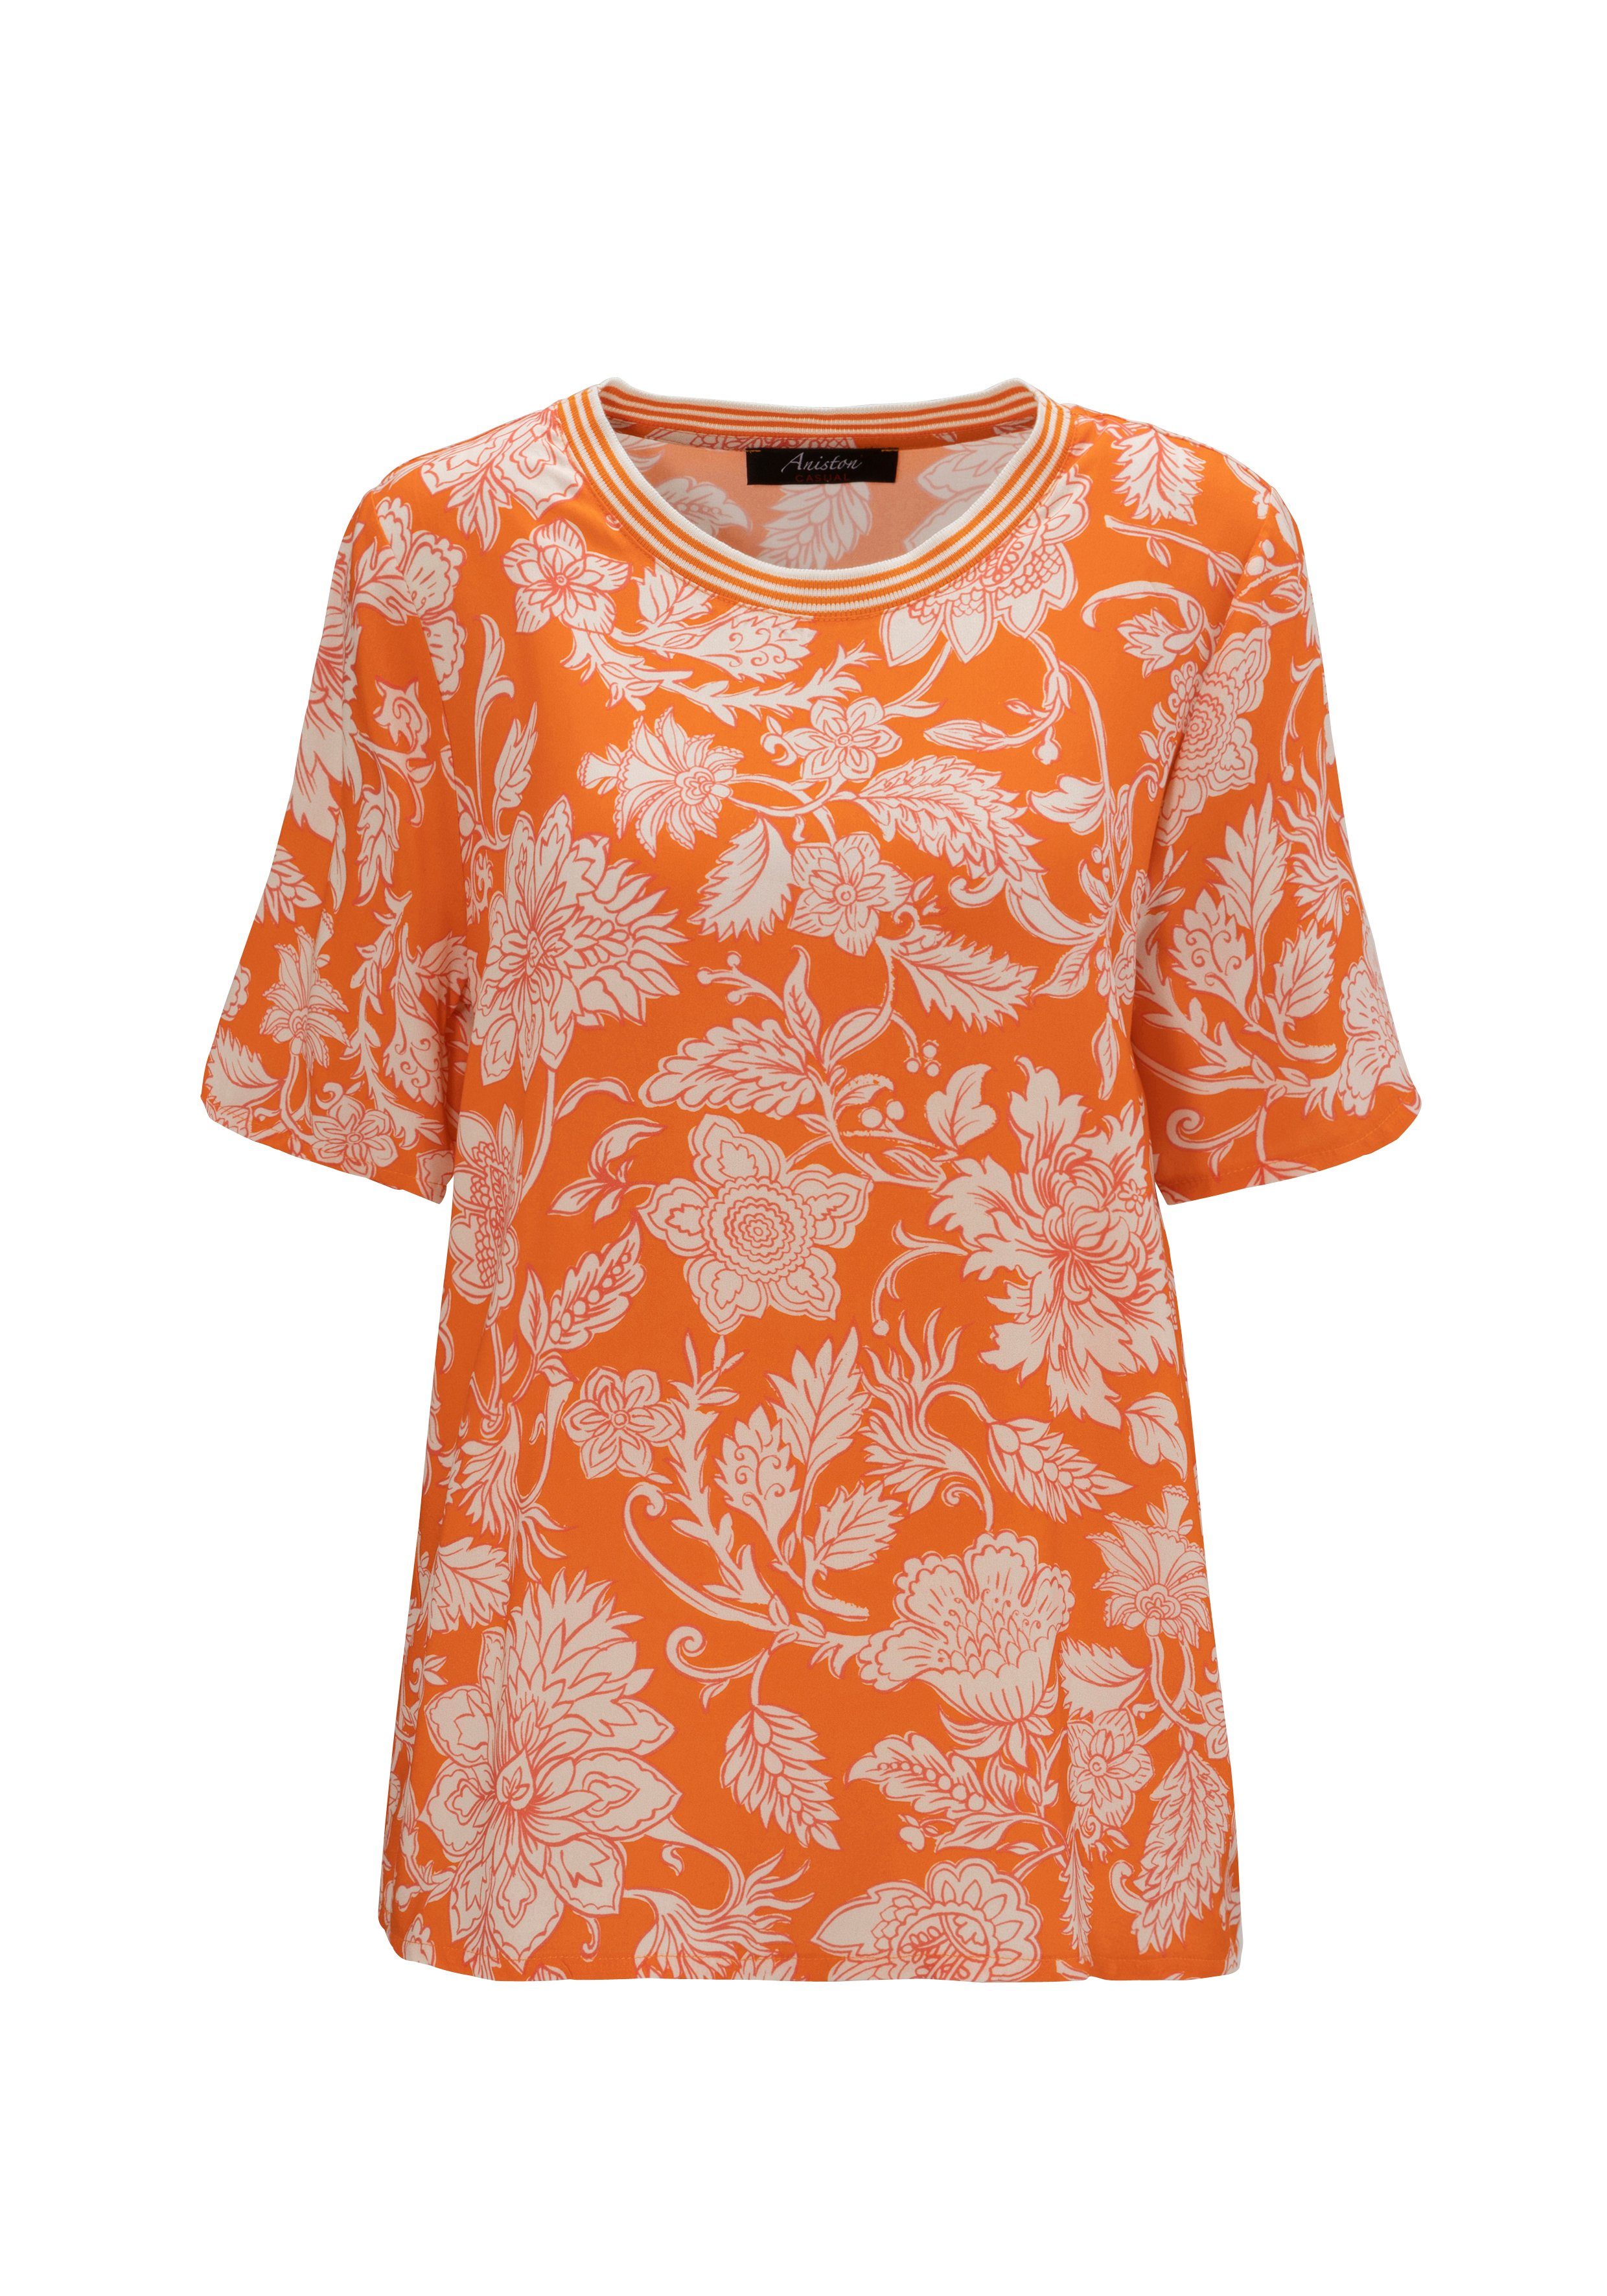 CASUAL KOLLEKTION - Blumendruck Aniston orange-sand-rot NEUE mit Schlupfbluse großflächigem